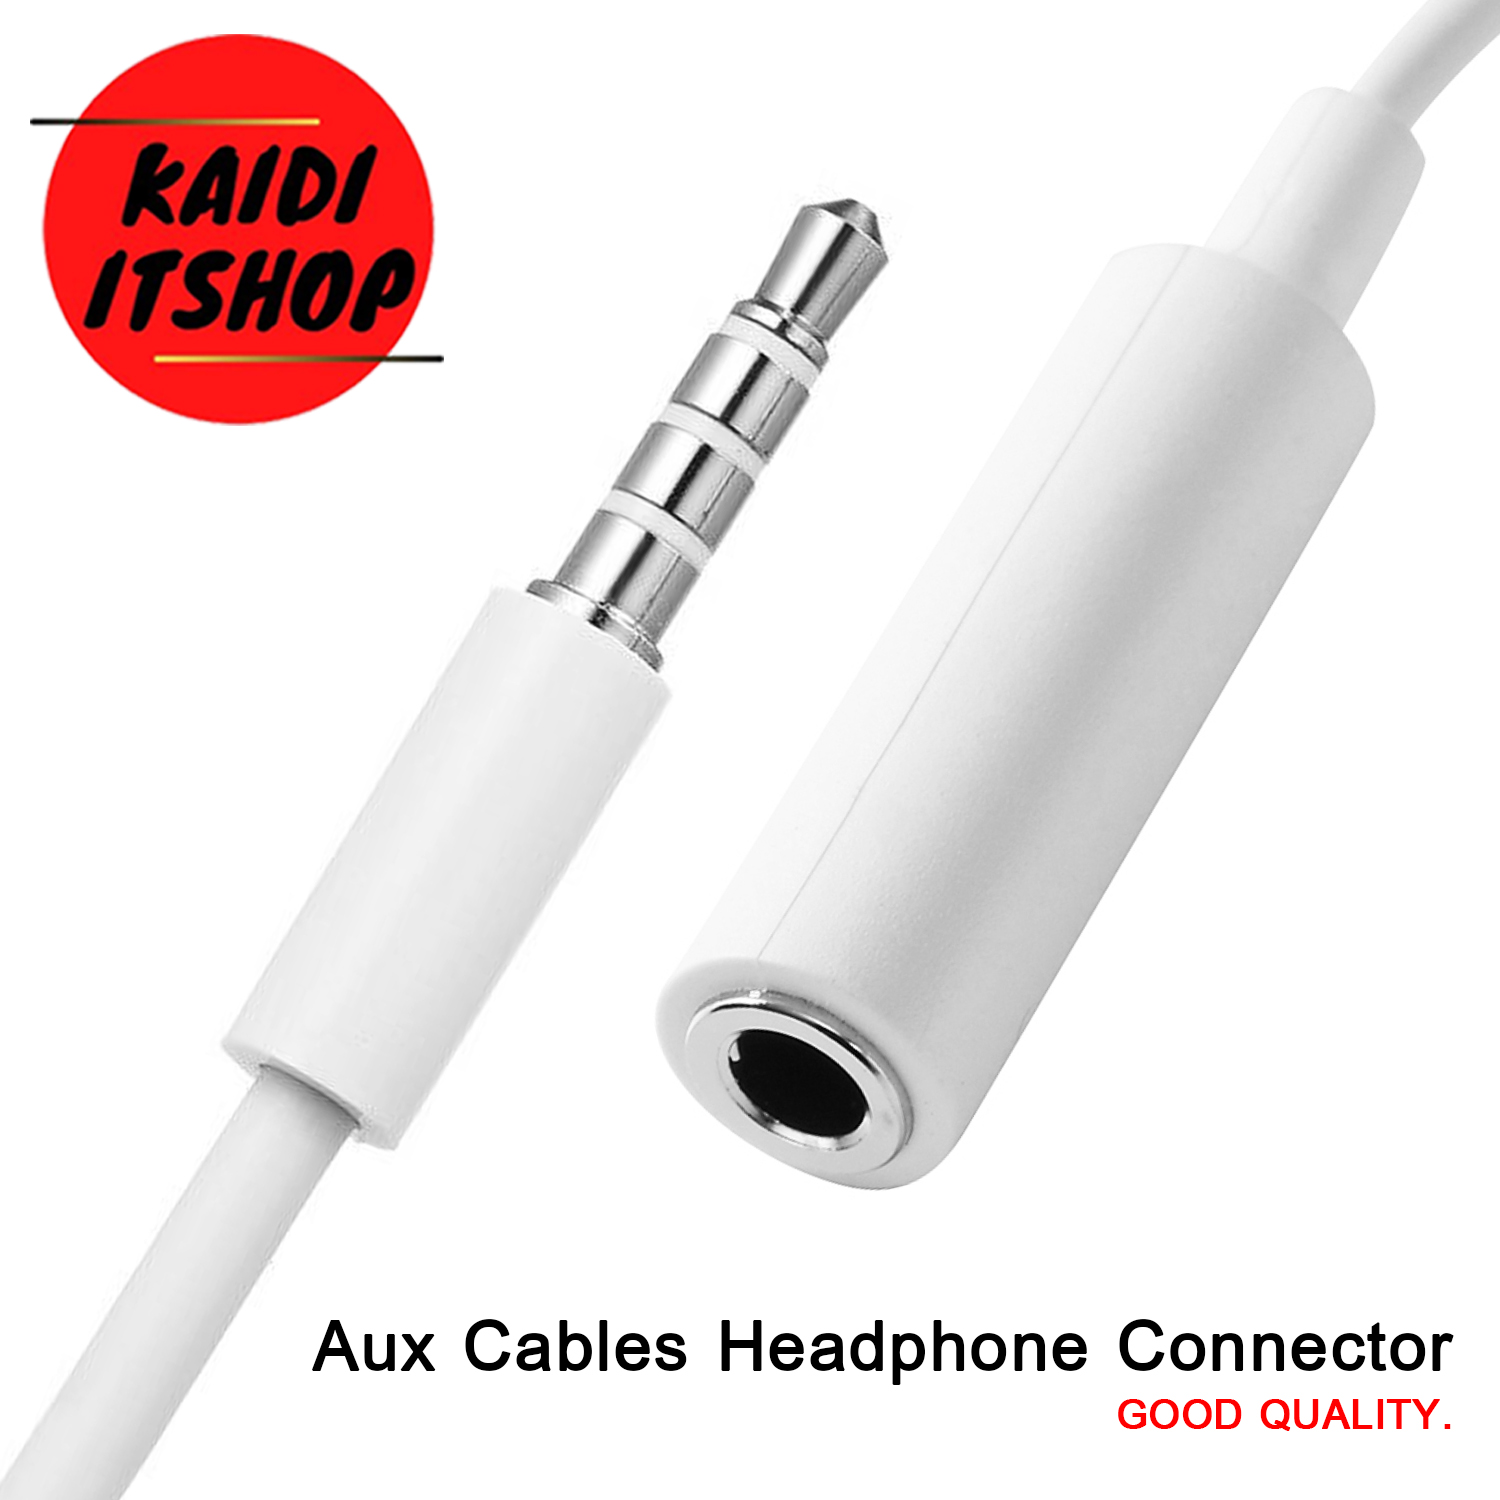 สาย Aux Audio Cables Headphone Connector ขนาด 3.5มม สายต่อยาวสำหรับหูฟังโทรศัพท์ แบบ 3 ขีด (ความยาว 1 เมตร)